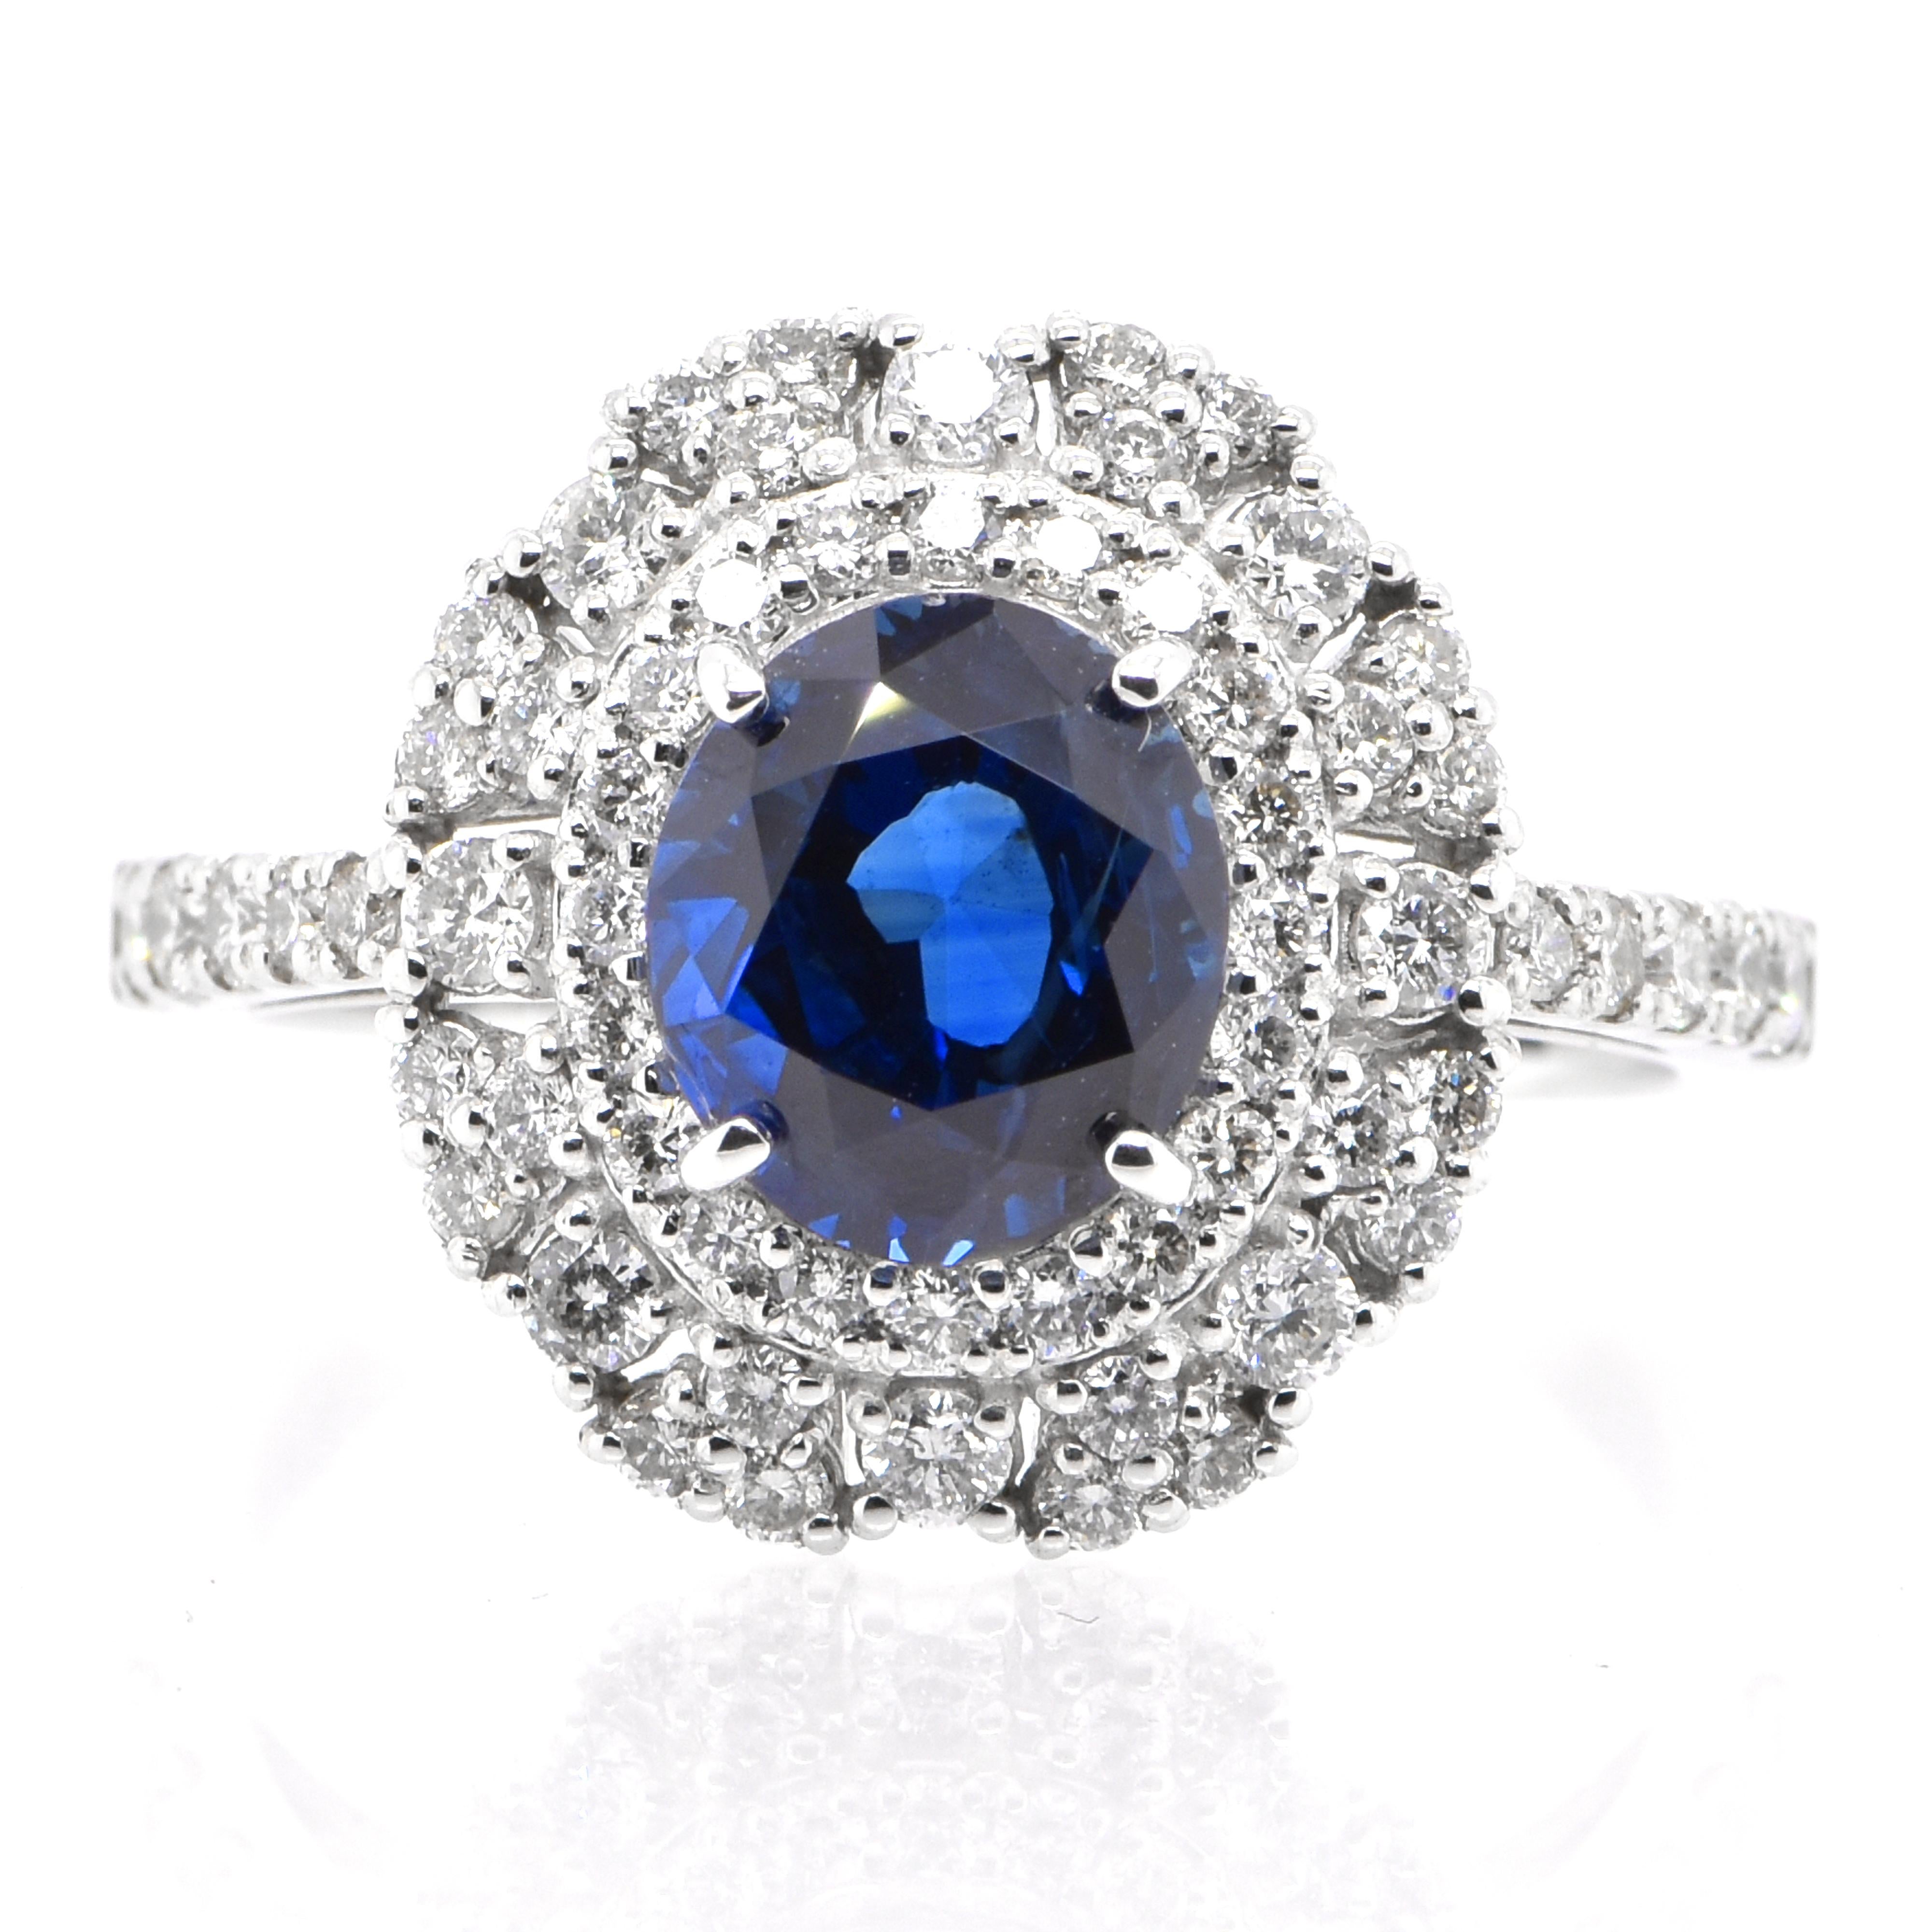 Ein wunderschöner Ring mit AIGS-zertifiziertem 2,32 Karat, natürlichem königsblauem Saphir und 0,65 Karat Diamant-Akzenten in Platin gefasst. Saphire sind außerordentlich widerstandsfähig - sie zeichnen sich durch große Härte, Zähigkeit und